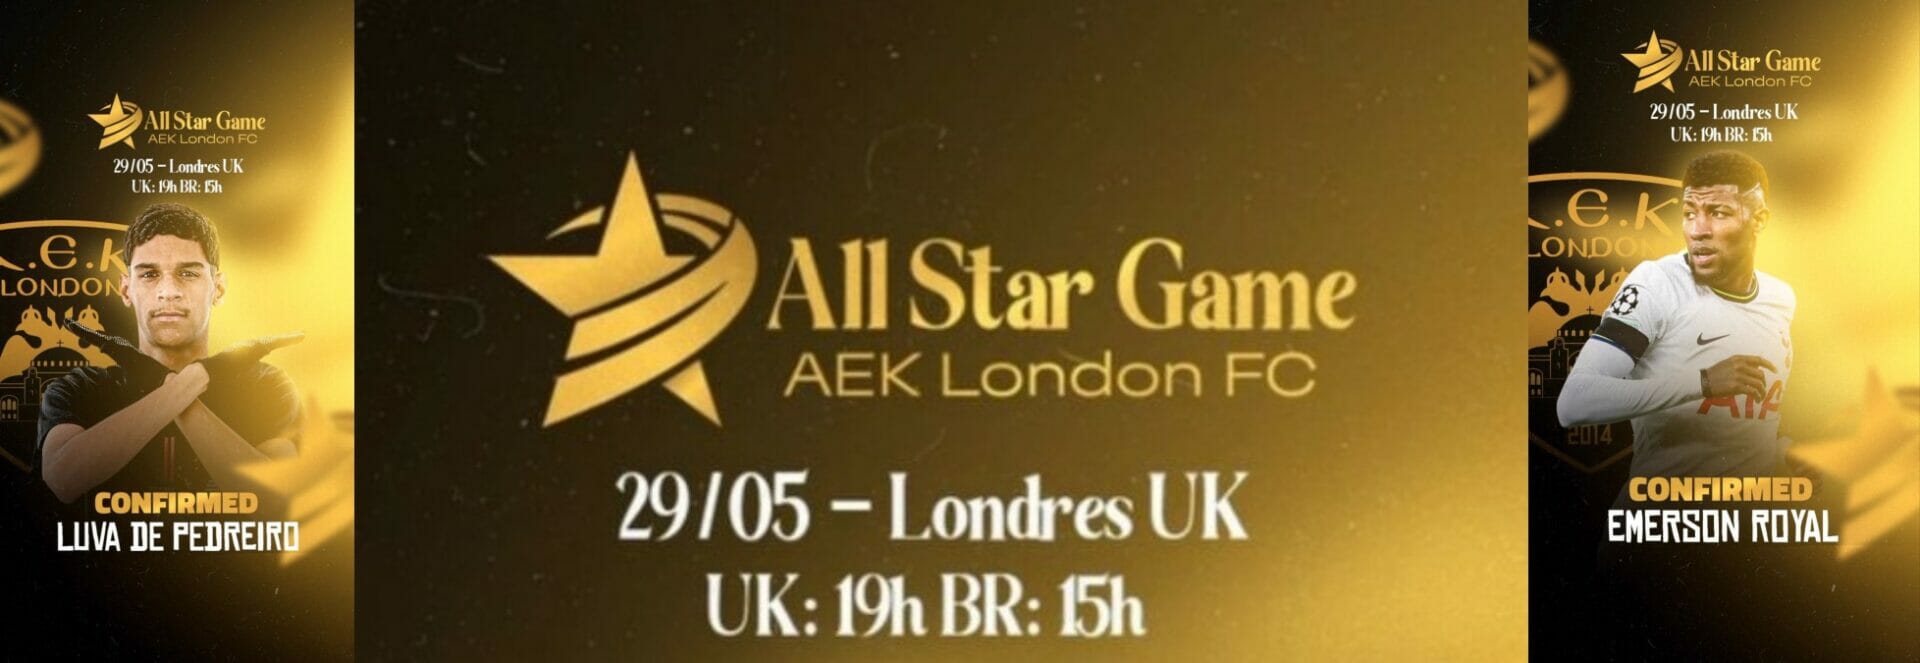 Conheça o AEK London, um time brasileiro na Inglaterra